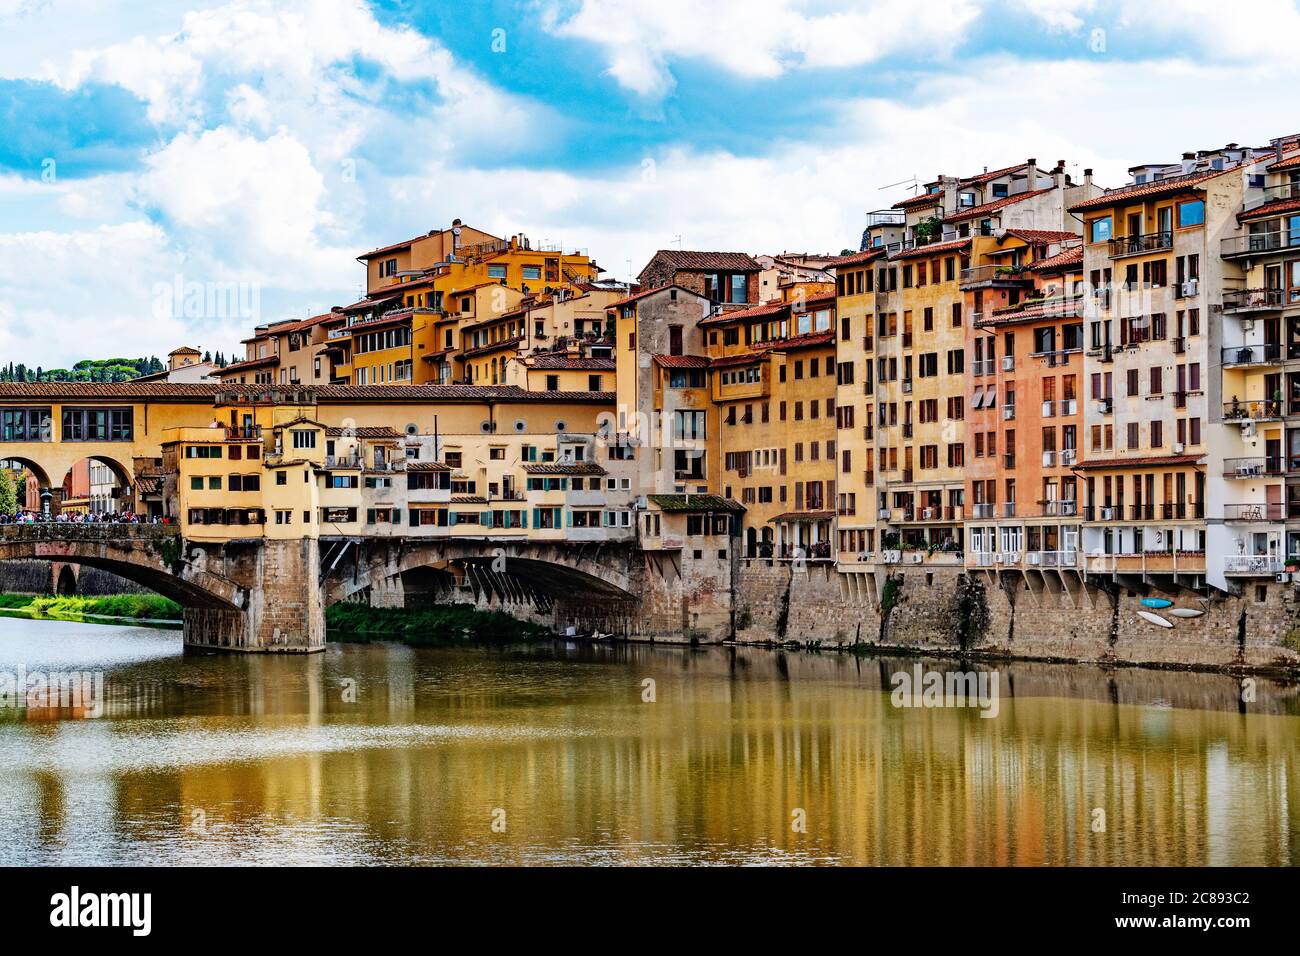 le célèbre ponte vecchio historique s'étend sur l'arno qui traverse la ville de florence en toscane, en italie. Banque D'Images